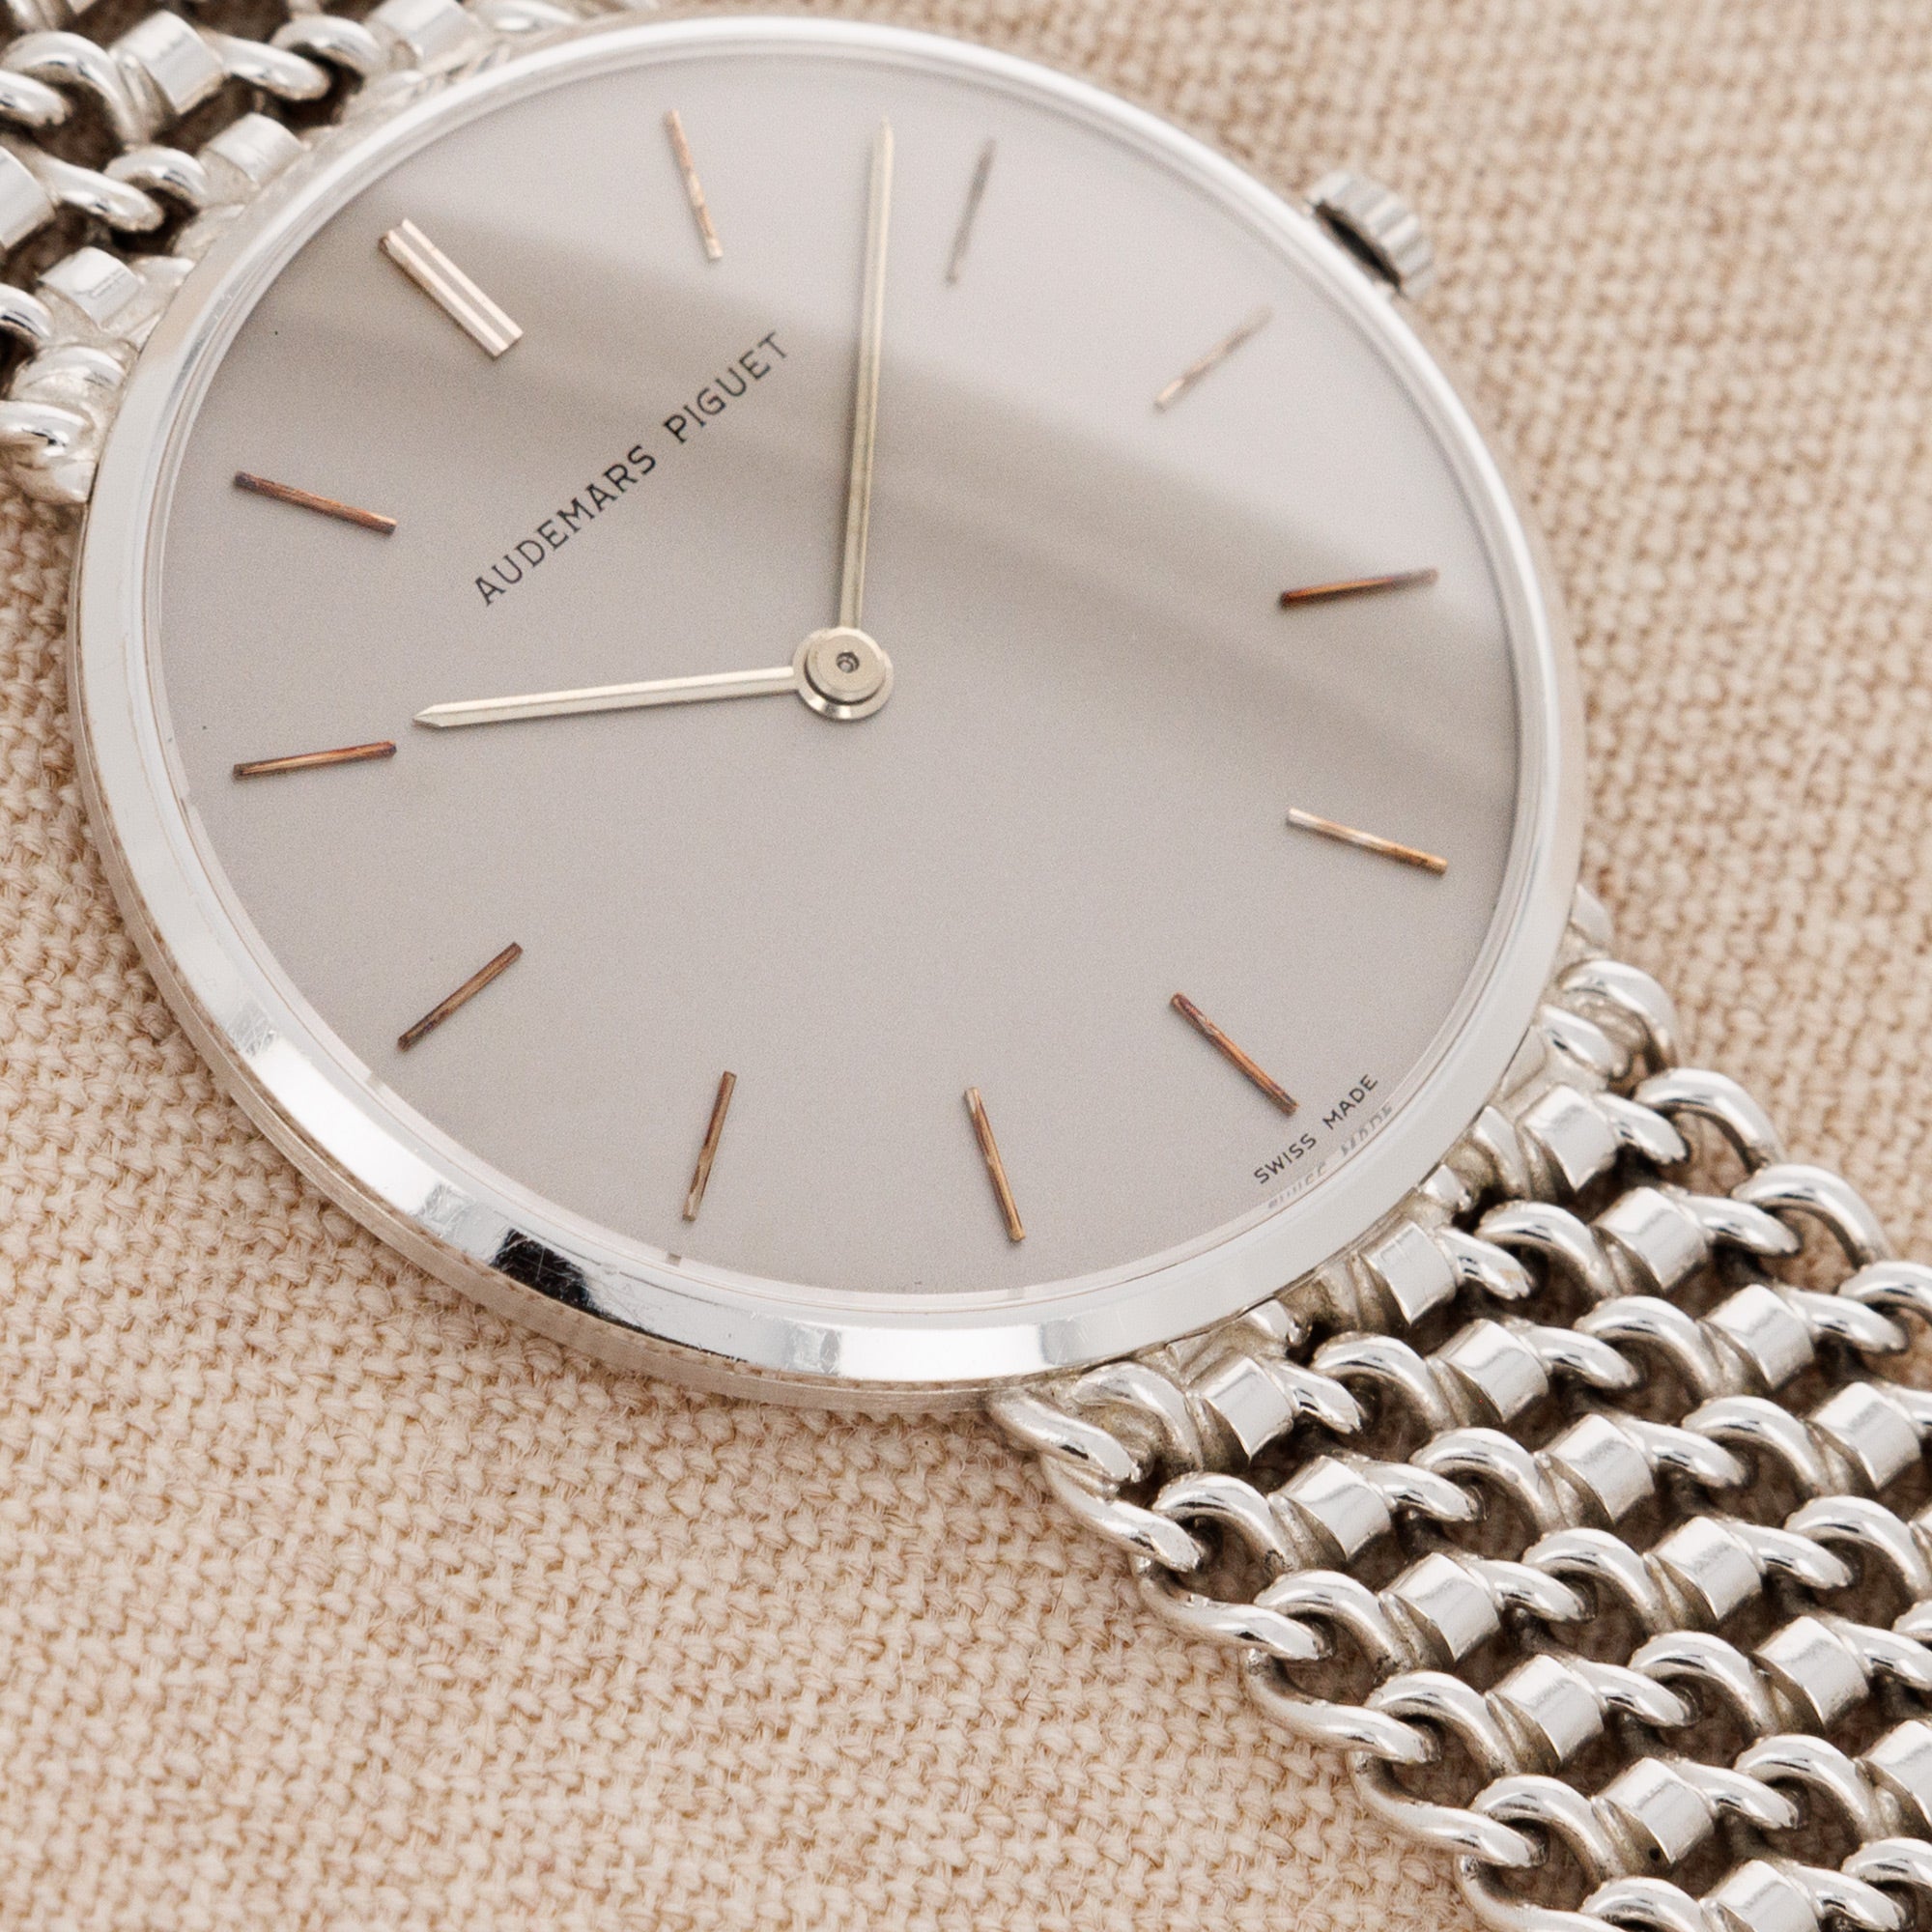 Audemars Piguet - Audemars Piguet White Gold Bracelet Watch - The Keystone Watches